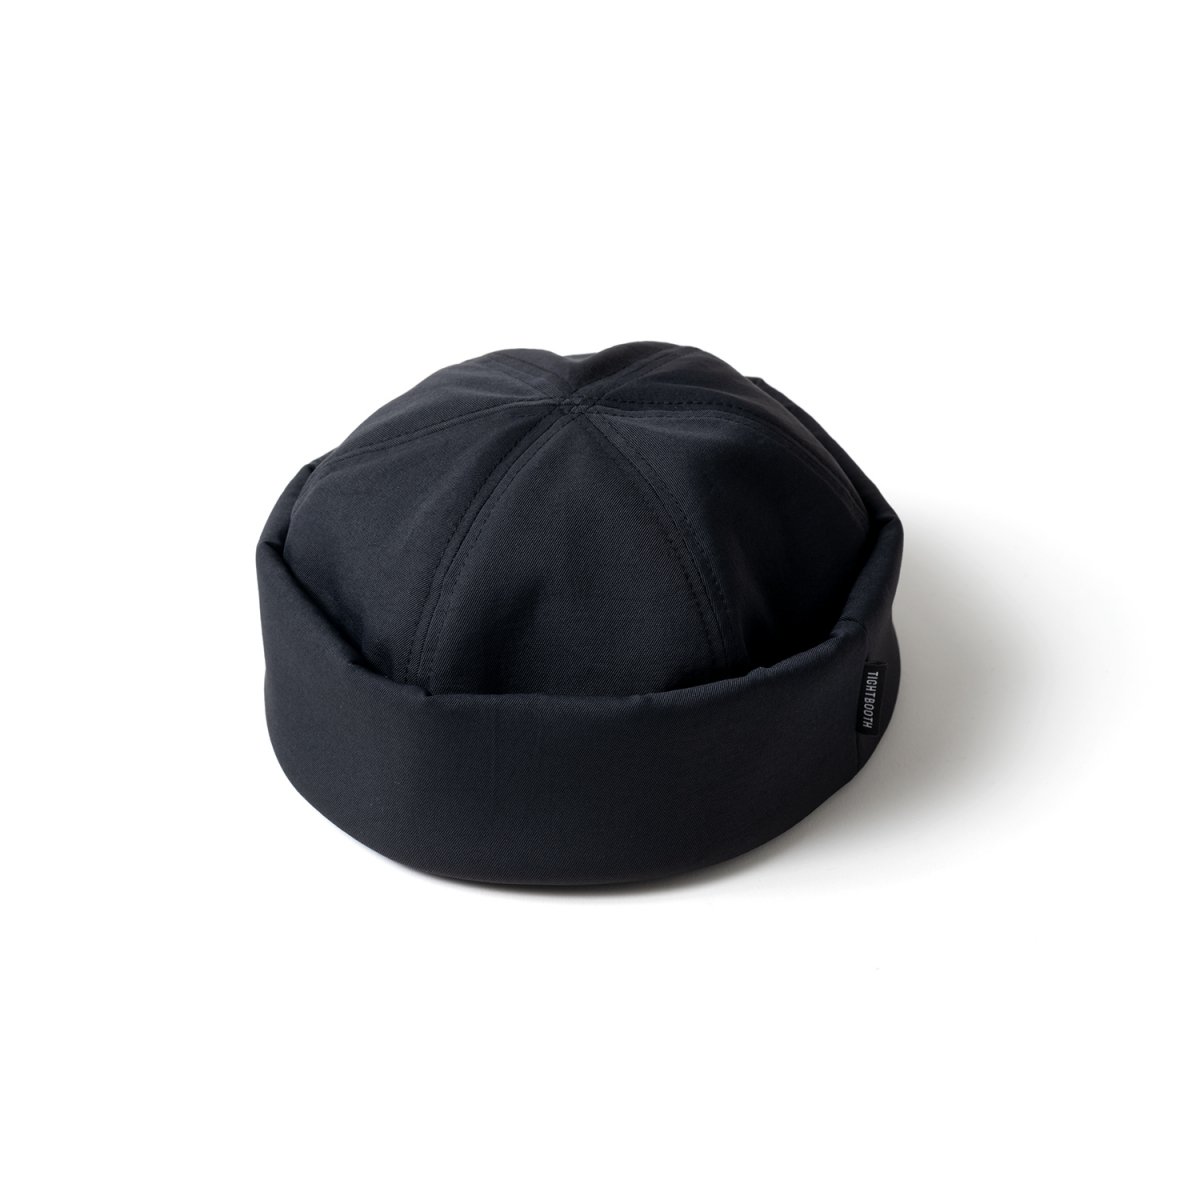 タイトブースロールキャップ NEW ARRIVAL - 帽子